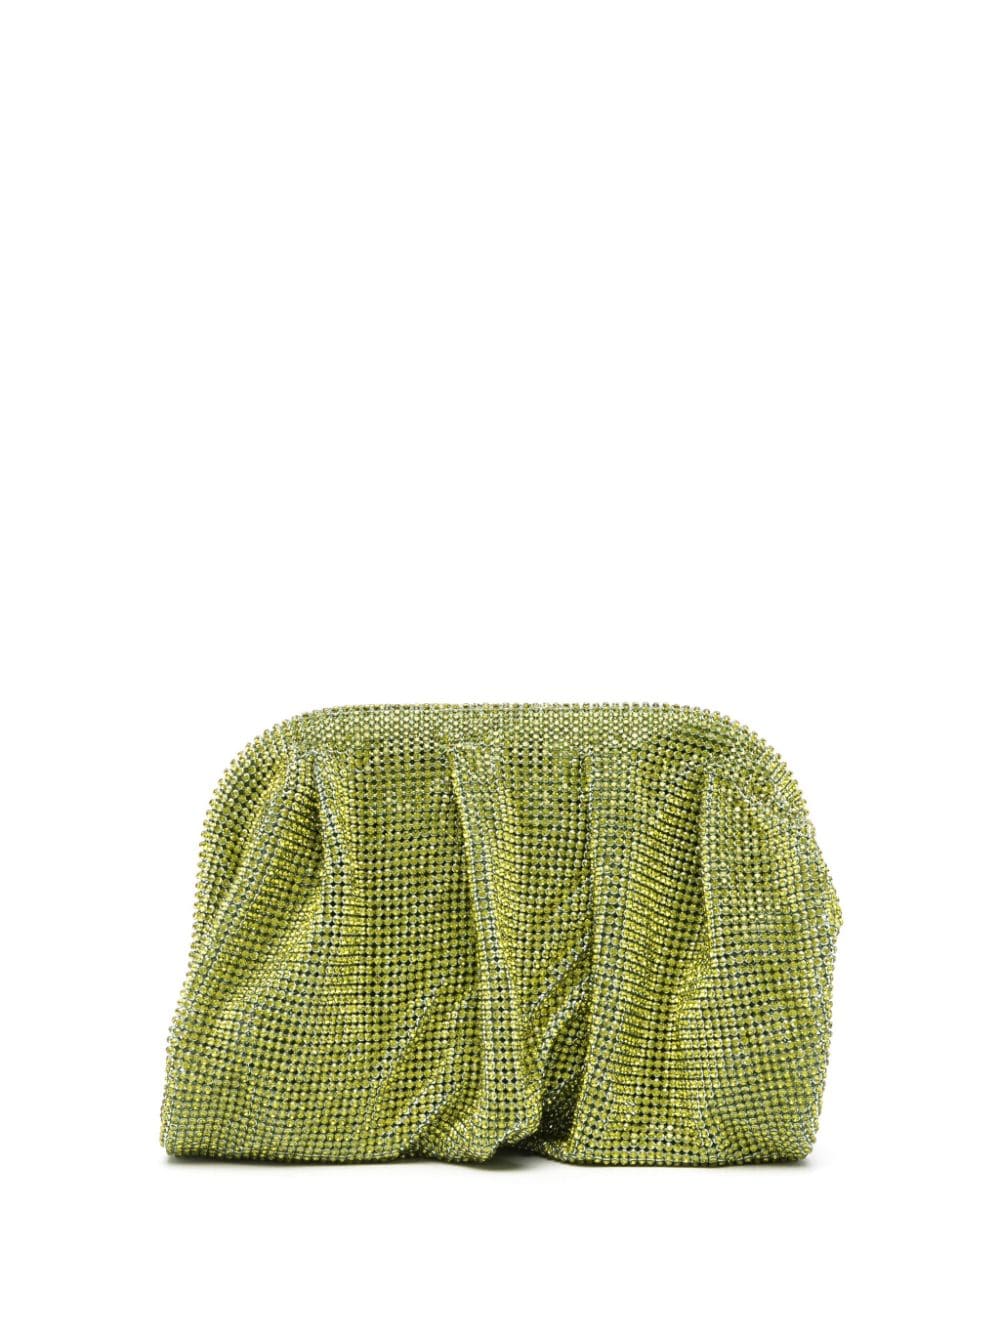 Benedetta Bruzziches rhinestone-embellished draped clutch bag - Green von Benedetta Bruzziches